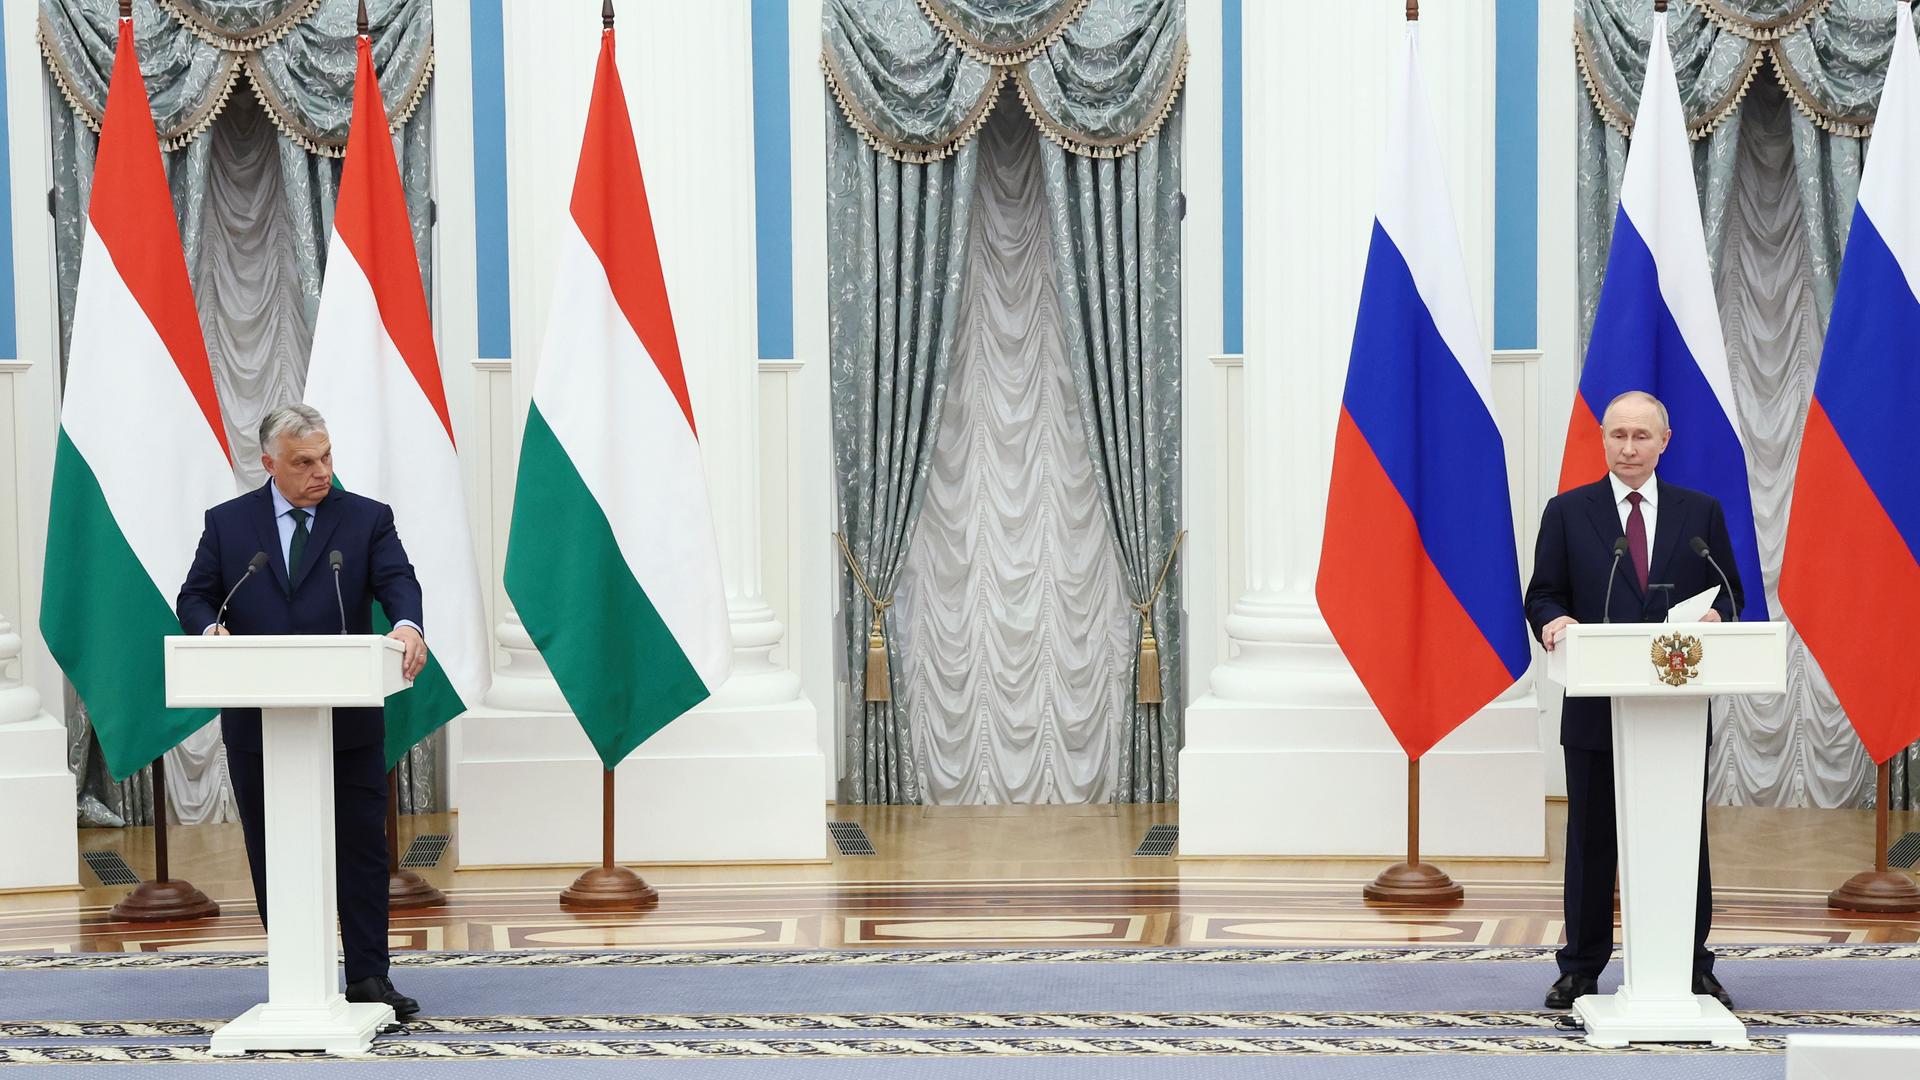 Viktor Orban und Wladimir Putin stehen an zwei etwas weiter auseinanderstehenden Pulten und geben ein Presse-Statement ab. Im Hintergrund sind vor einer prunkvollen Wand des Kreml die Flaggen Ungarns und Russlands zu sehen.